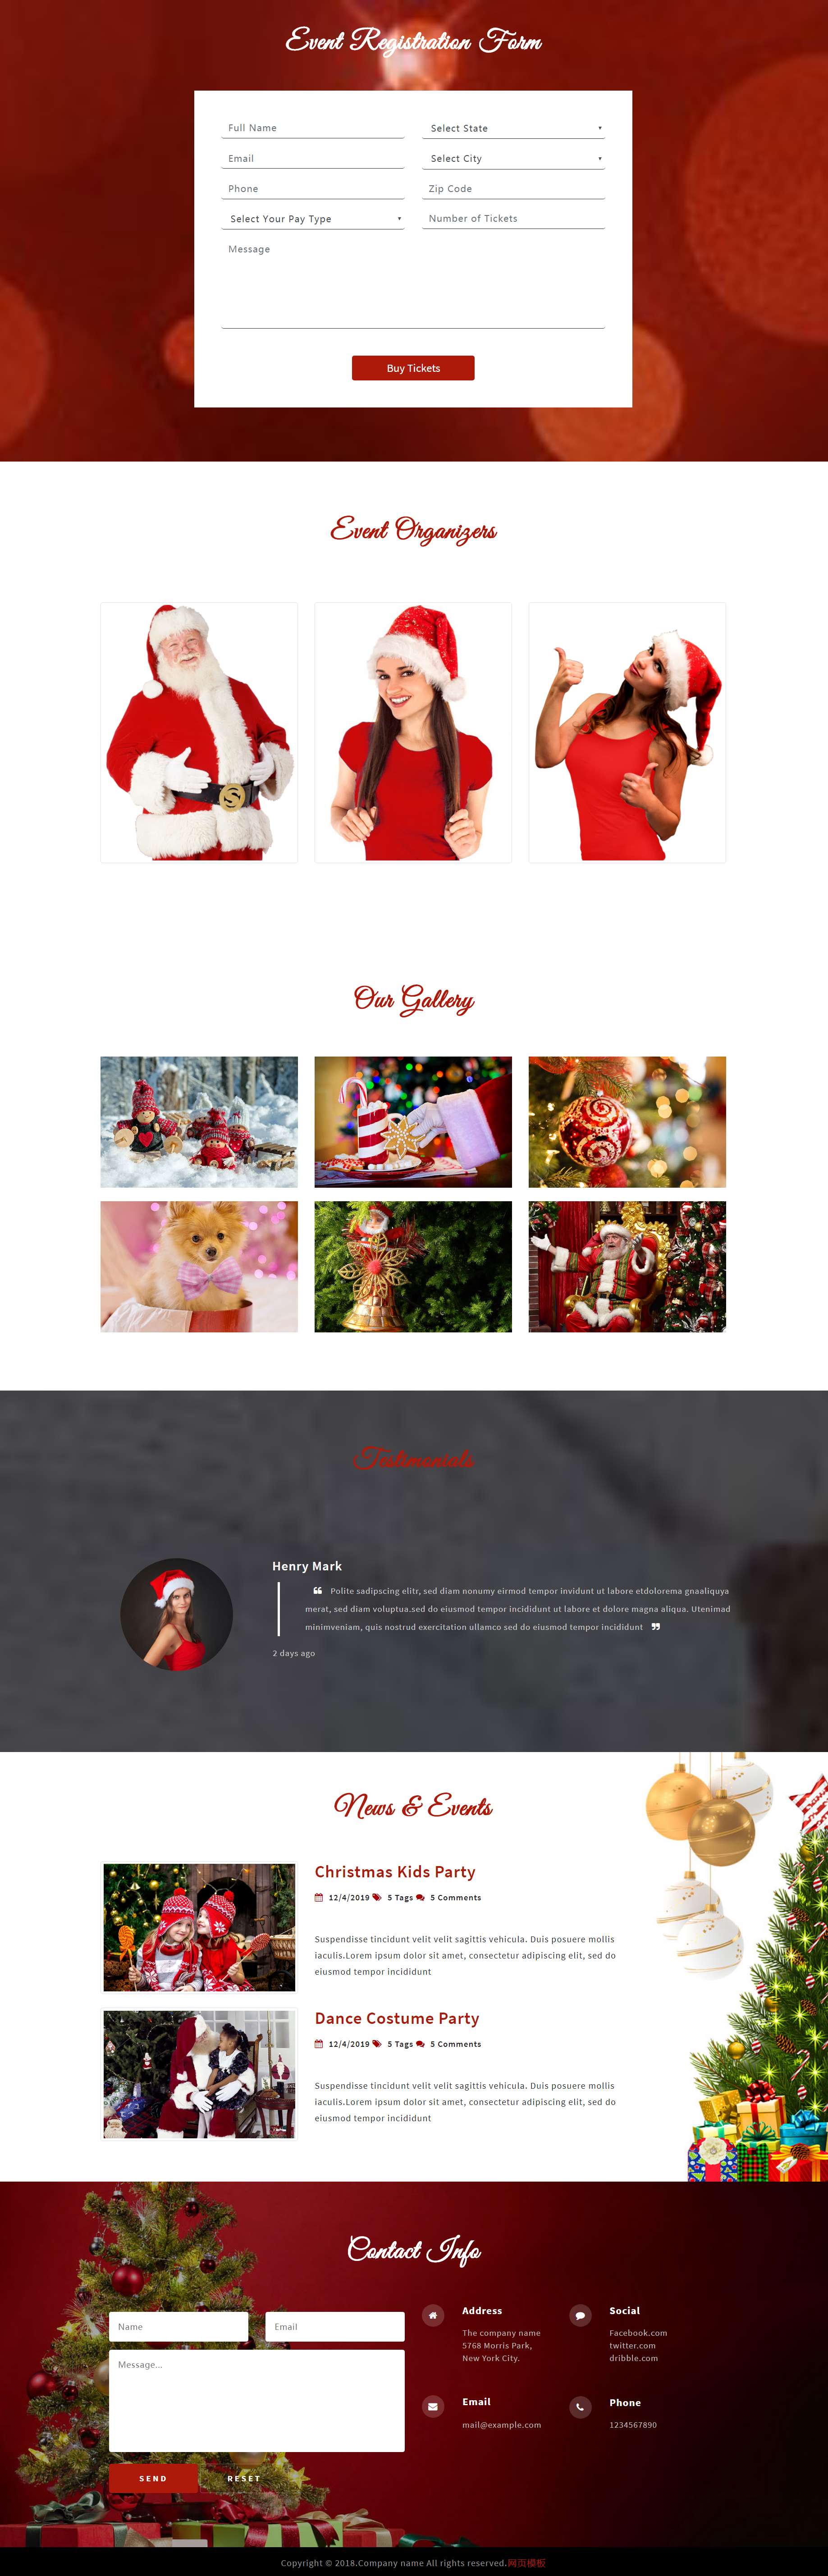 红色欧美风格响应式圣诞节专题网页模板